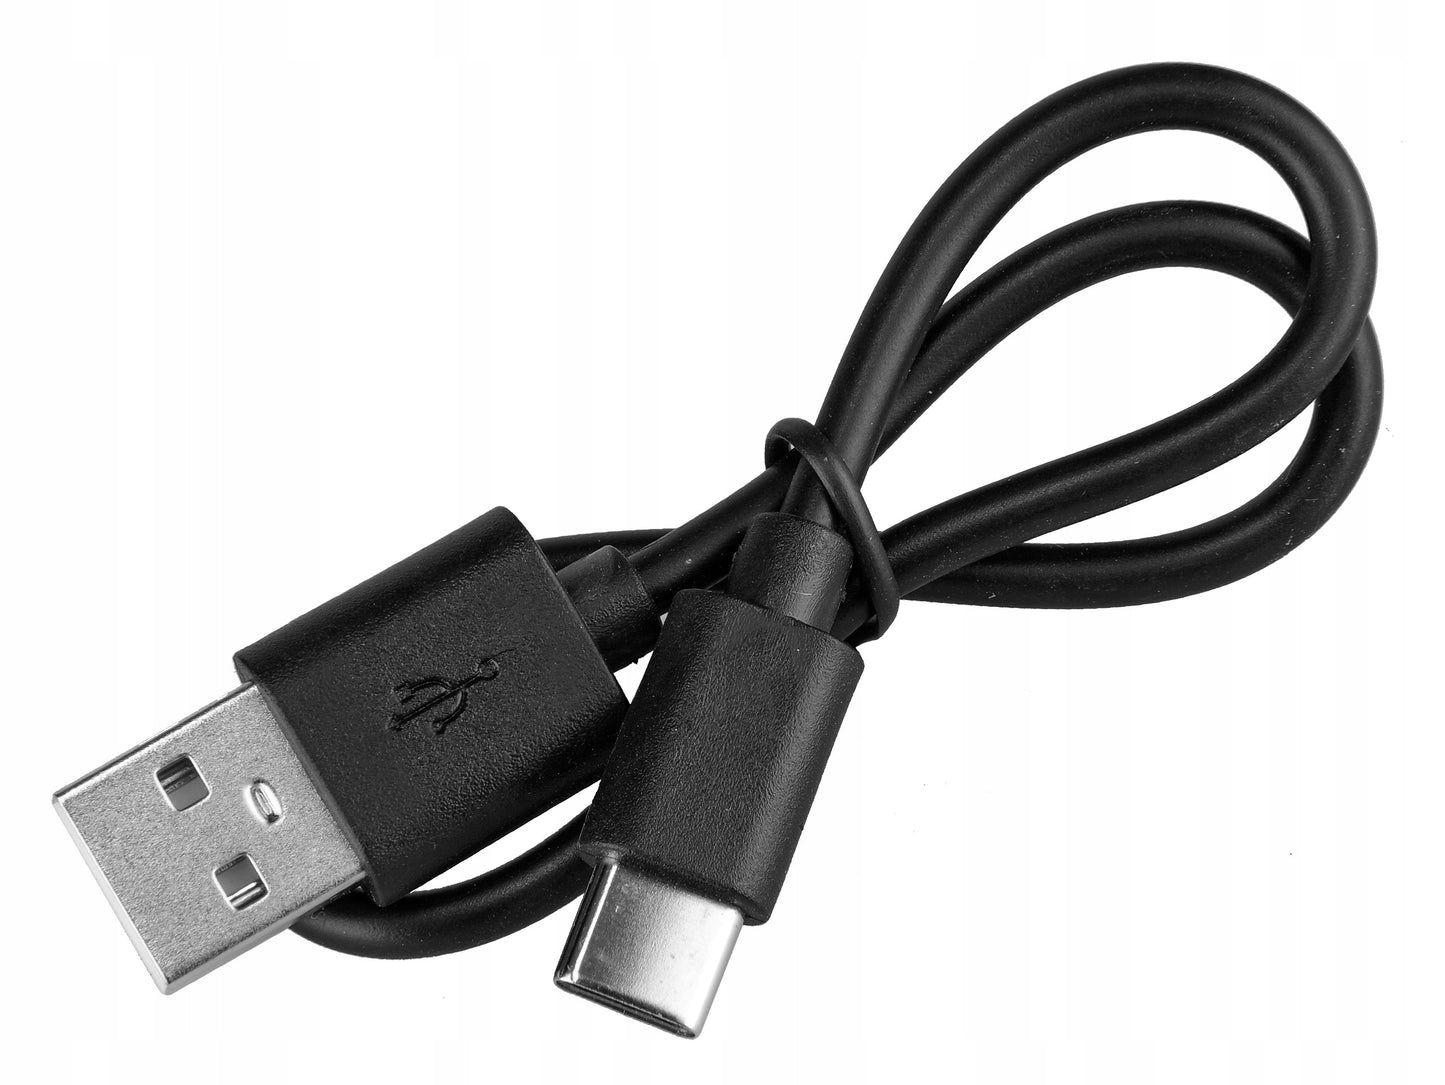 ProX 1800 Lumen Premium Line - Éclairage avant - Rechargeable USB-C 